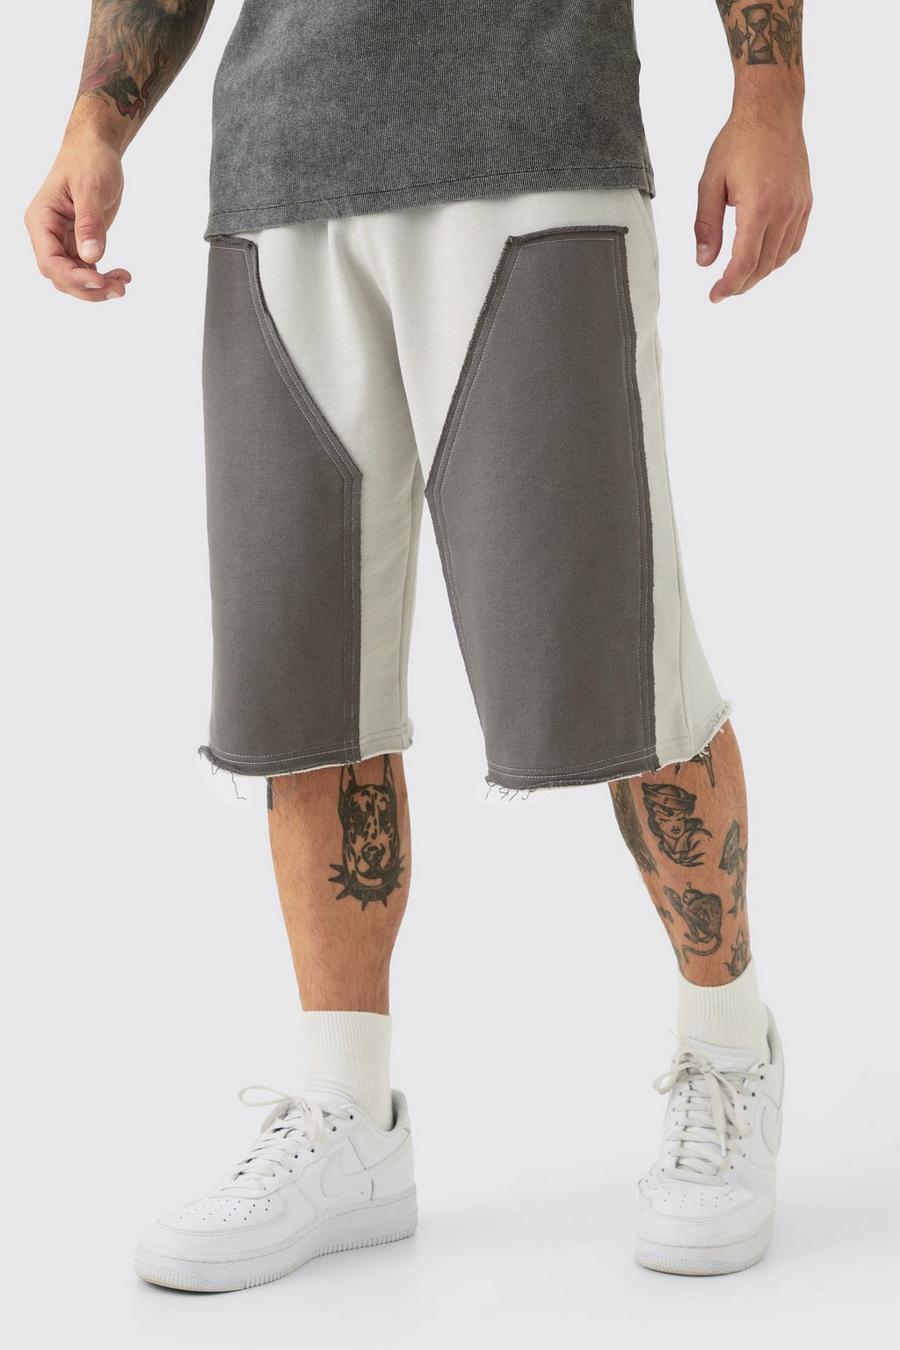 Pantalón corto holgado con aplique, paneles Carpenter y filos deshilachados, Grey image number 1